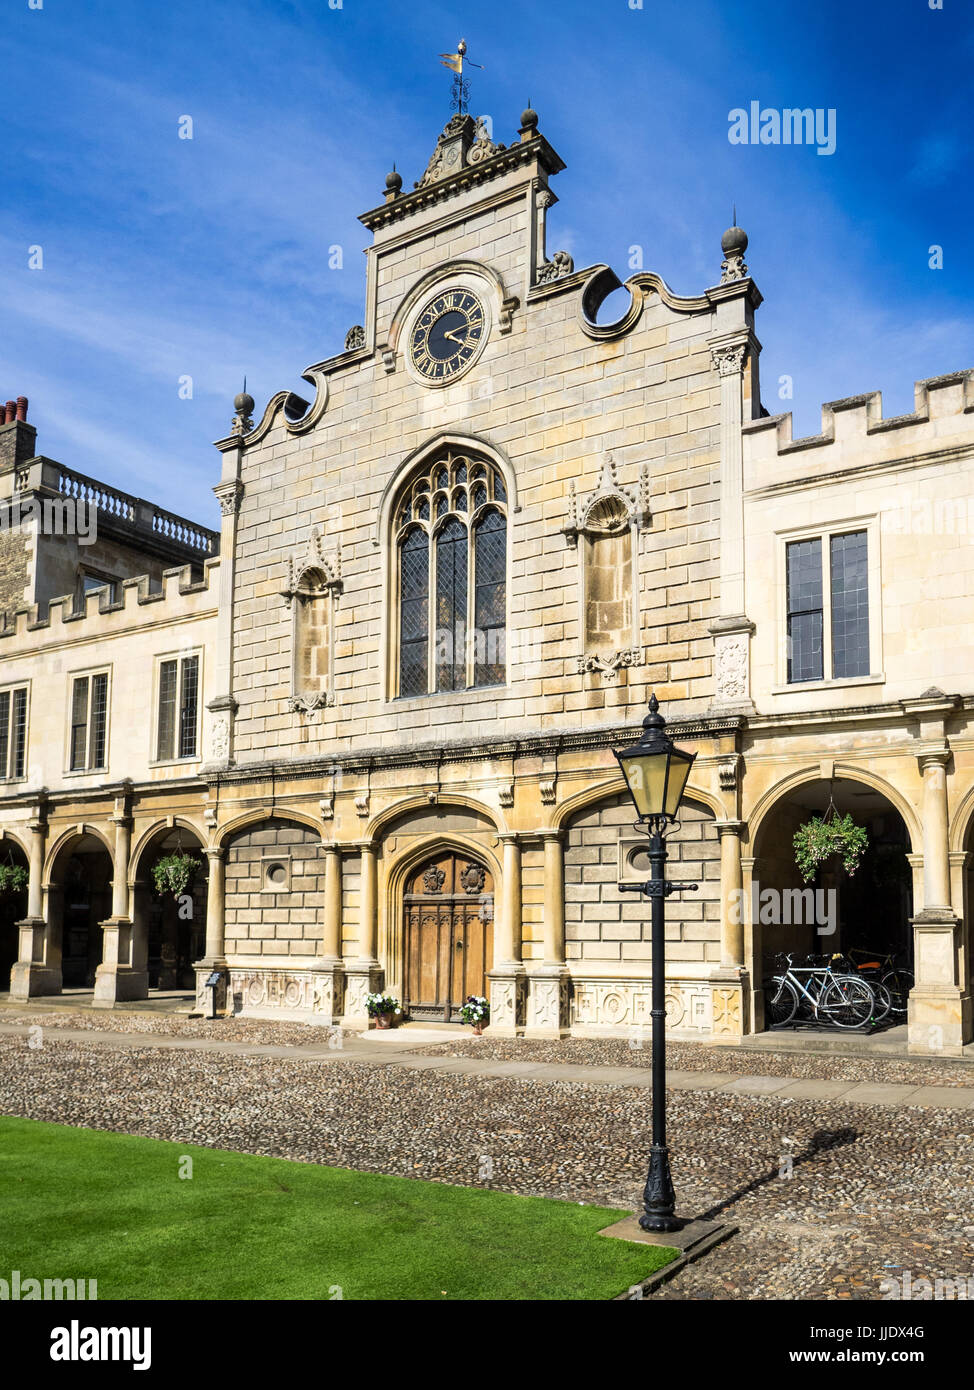 Cambridge - La Tour de l'horloge de Peterhouse College, qui fait partie de l'Université de Cambridge. Le collège a été fondé en 1284. Banque D'Images